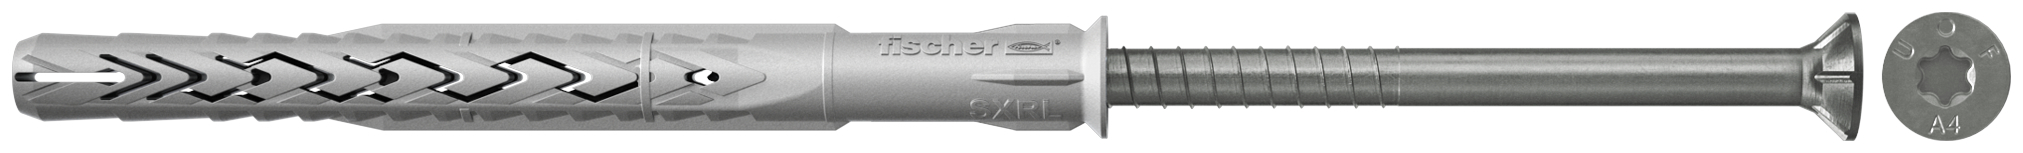 fischer Tasselli prolungati SXRL 10X160 T A4 (1 Pz.) Tassello prolungato in nylon con marcatura CE con vite premontata in acciaio inox A4, T.S.P. impronta torx fie2379